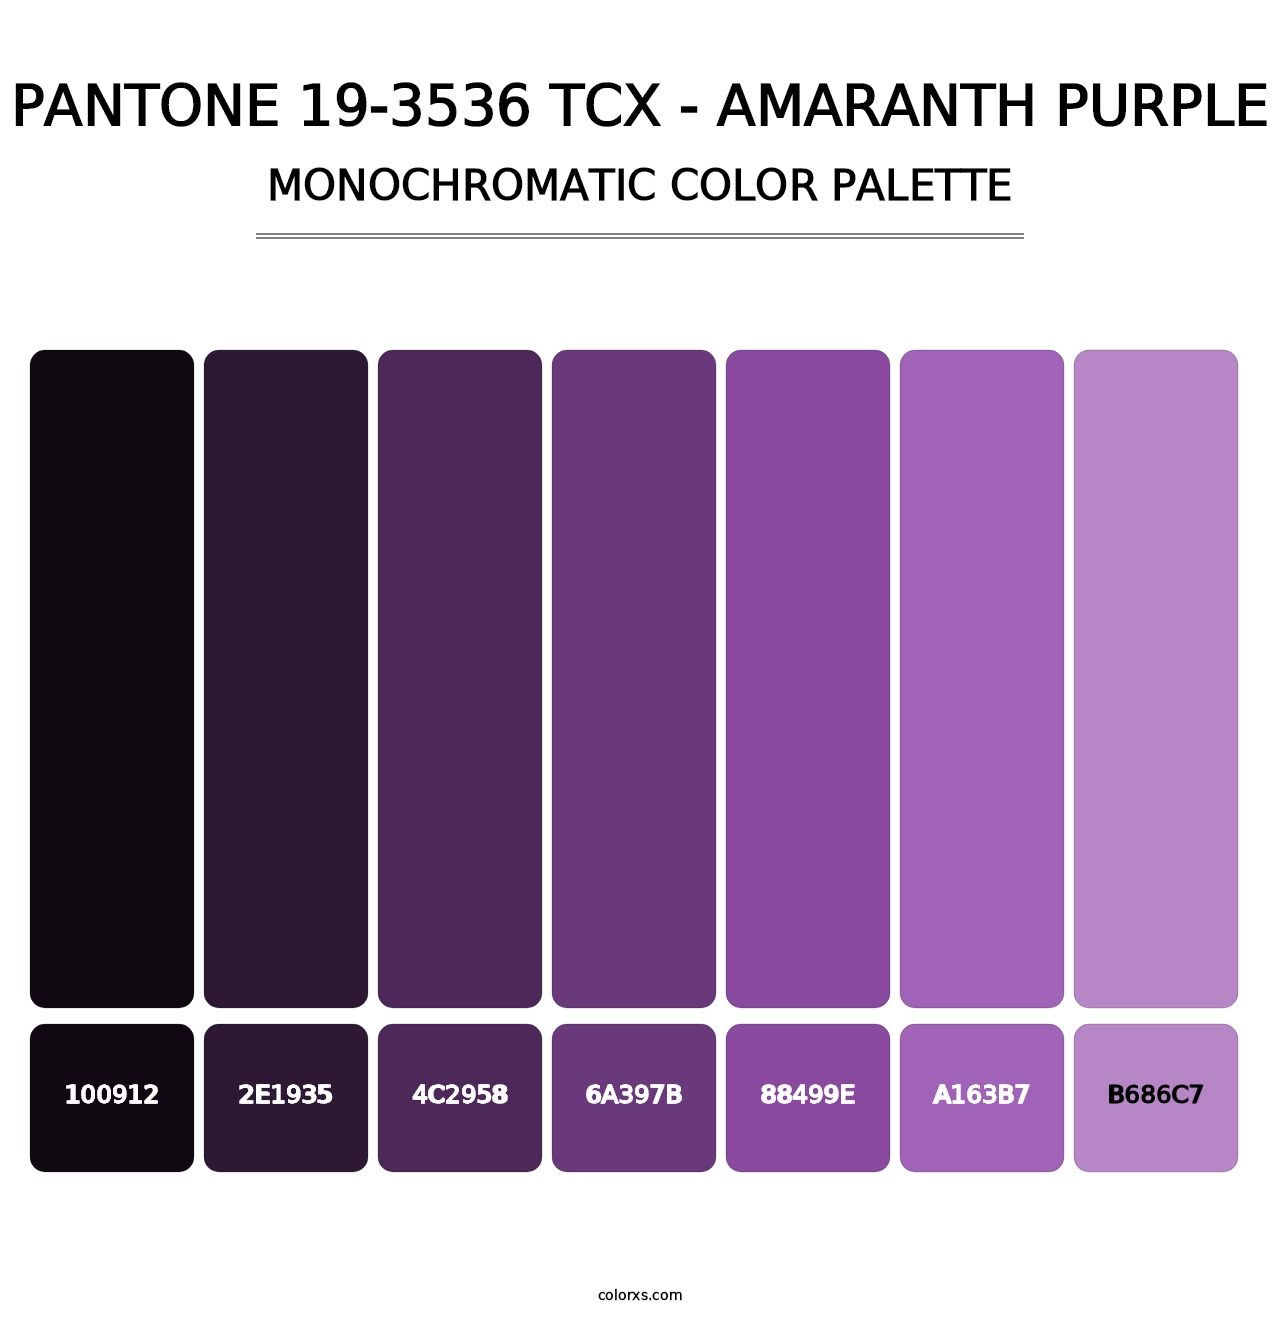 PANTONE 19-3536 TCX - Amaranth Purple - Monochromatic Color Palette